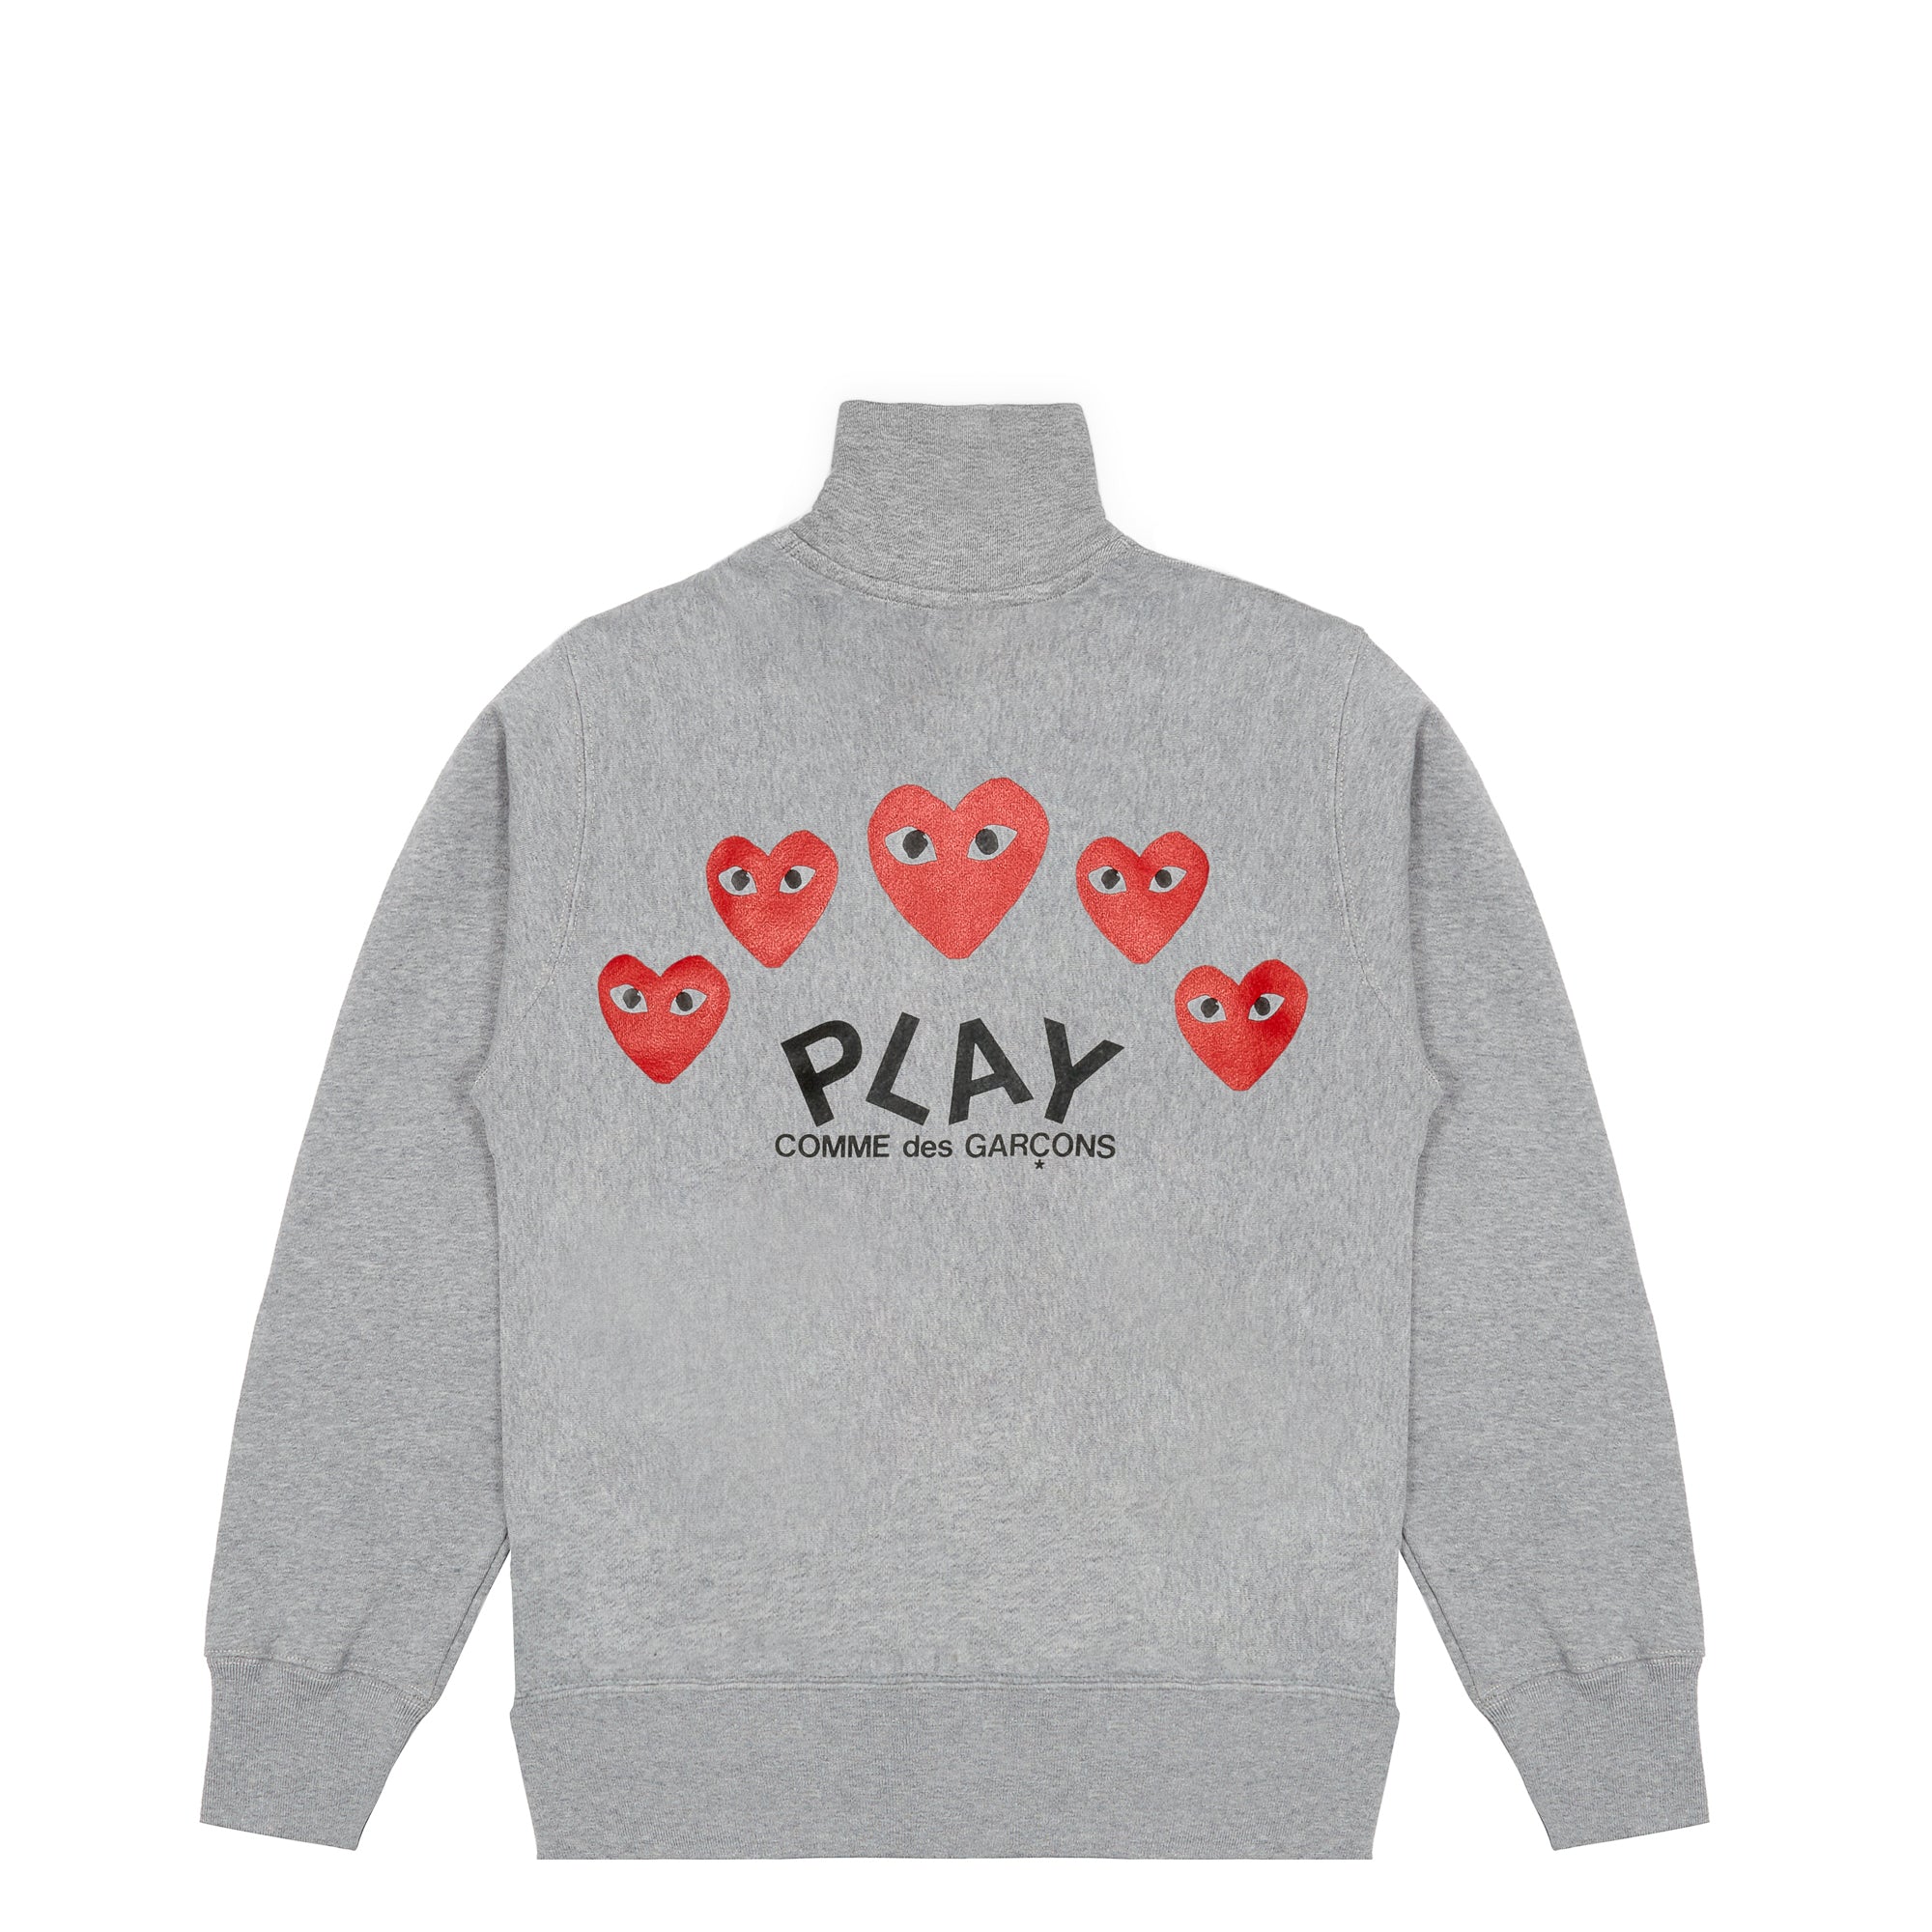 Play - Sweatshirt with 5 Hearts - (Grey)